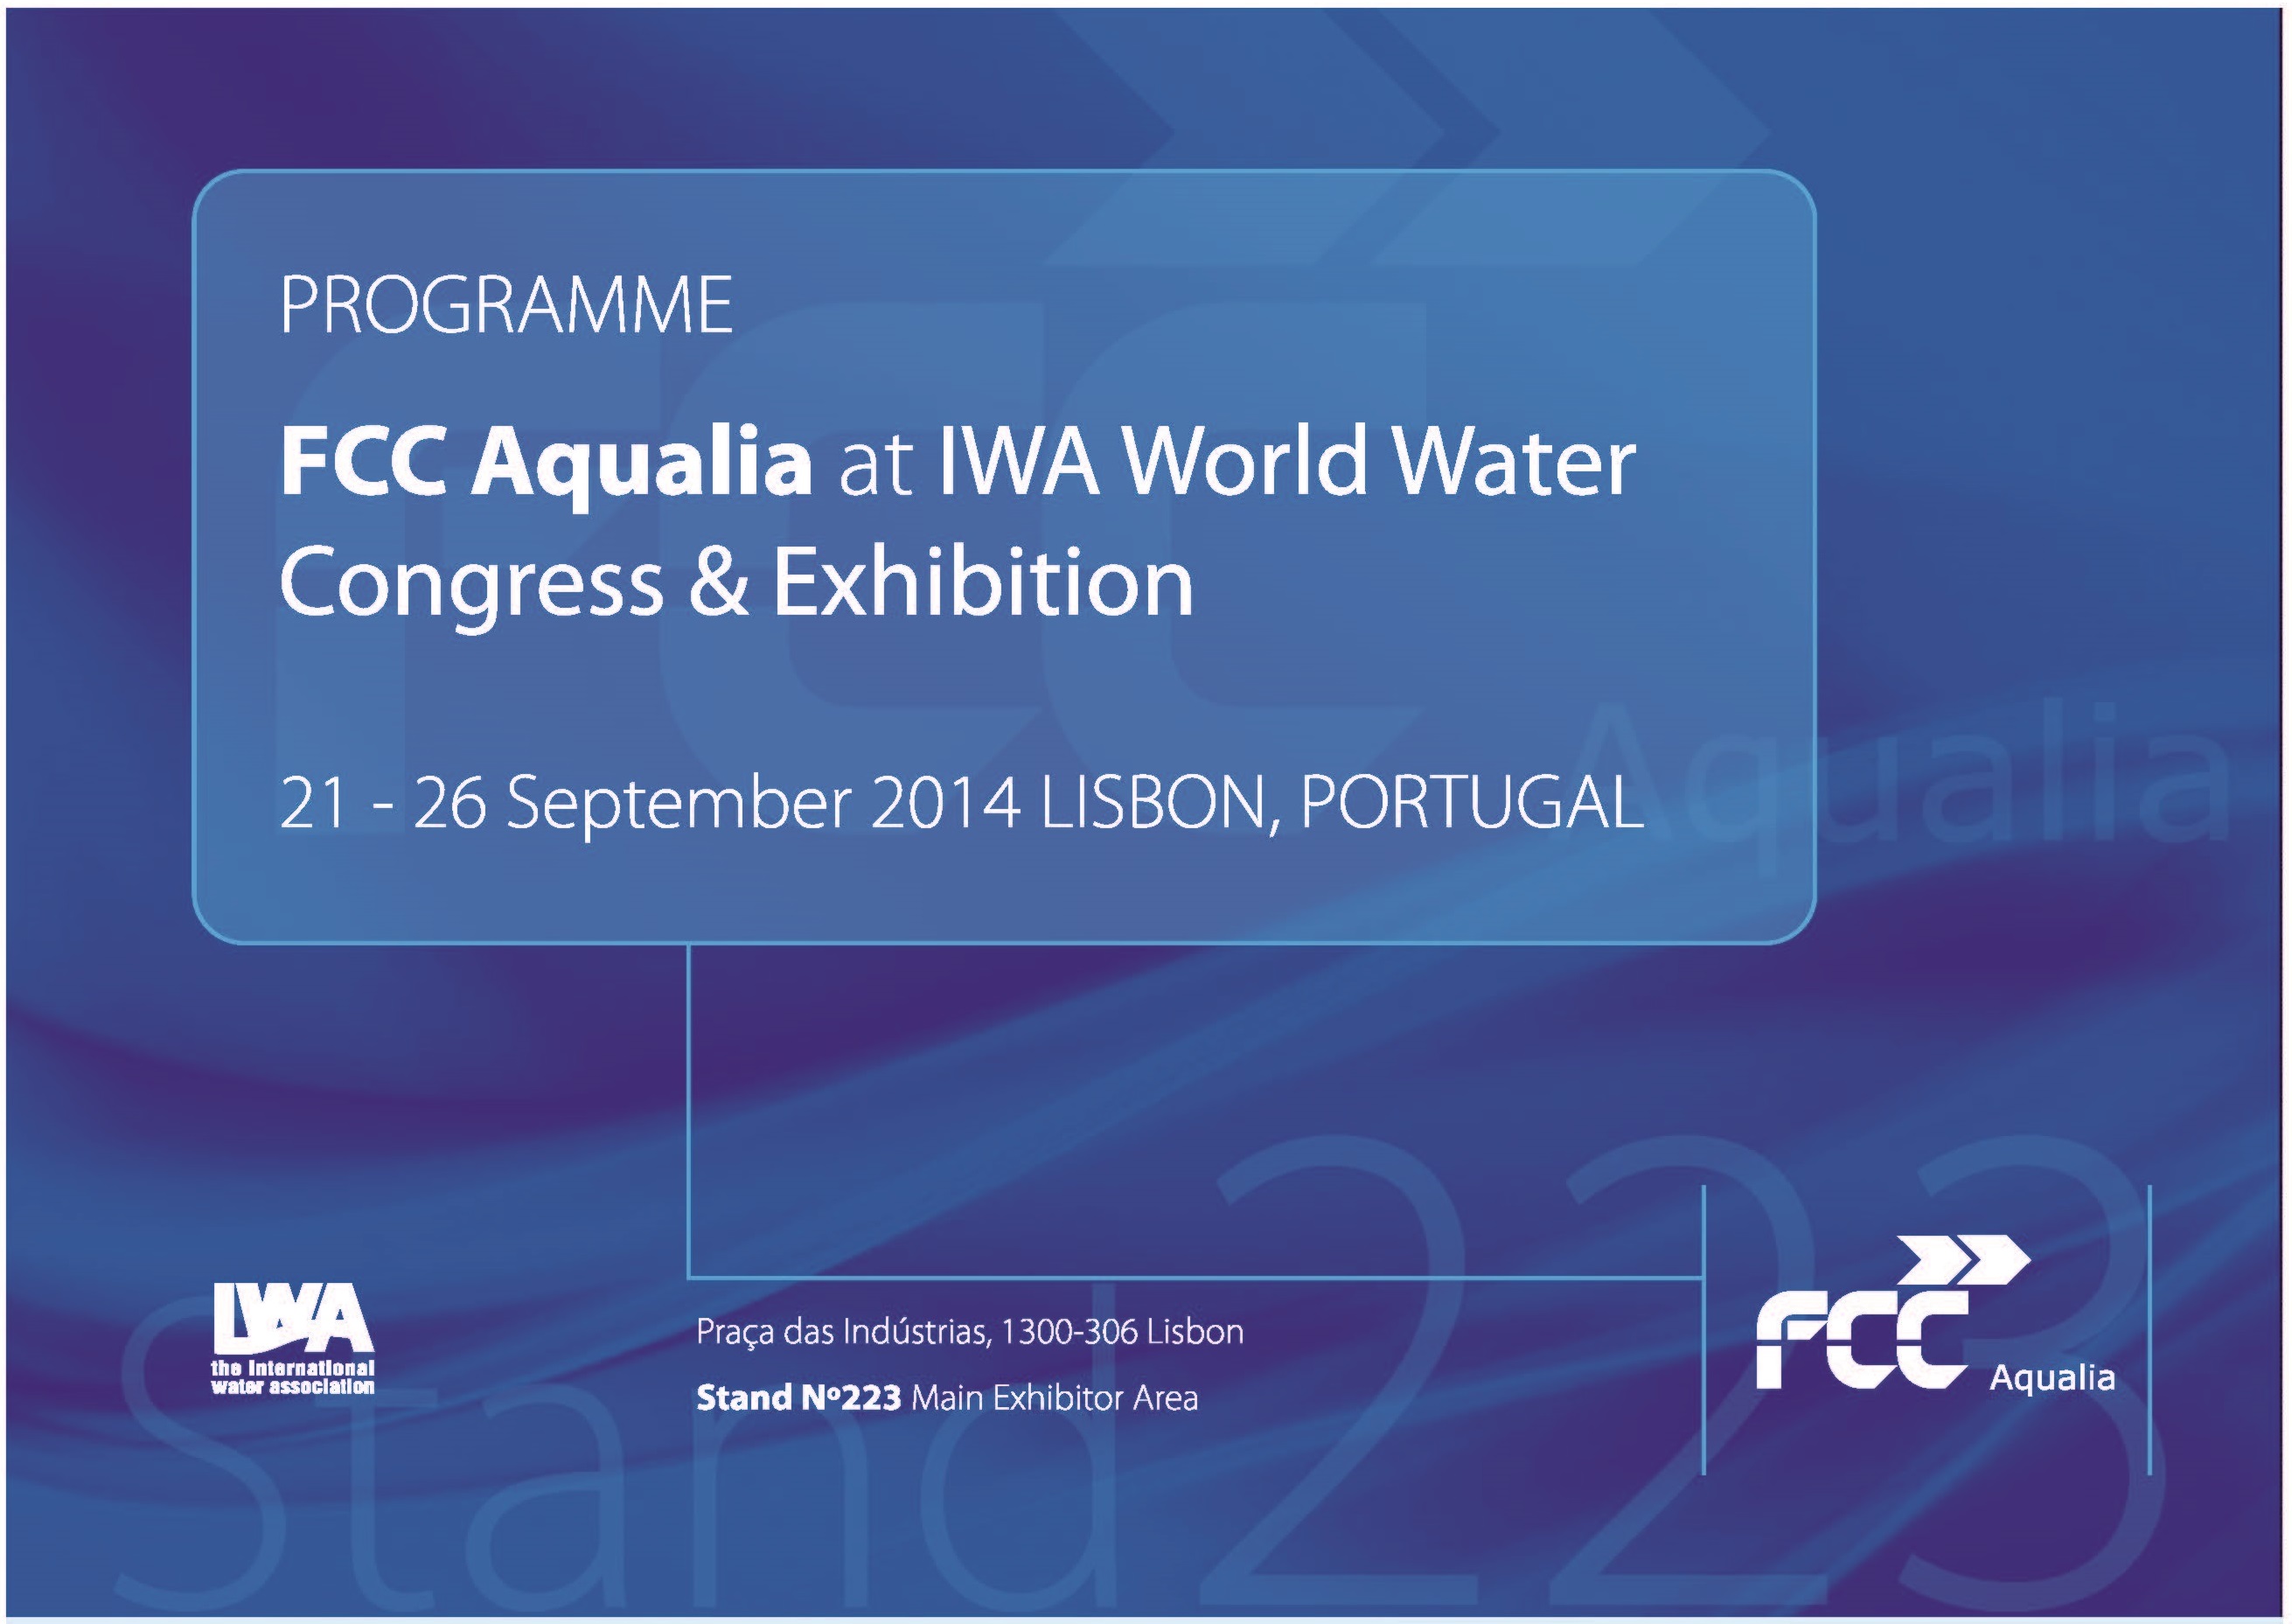 Los desarrollos tecnológicos de FCC Aqualia protagonistas en el Congreso IWA 2014